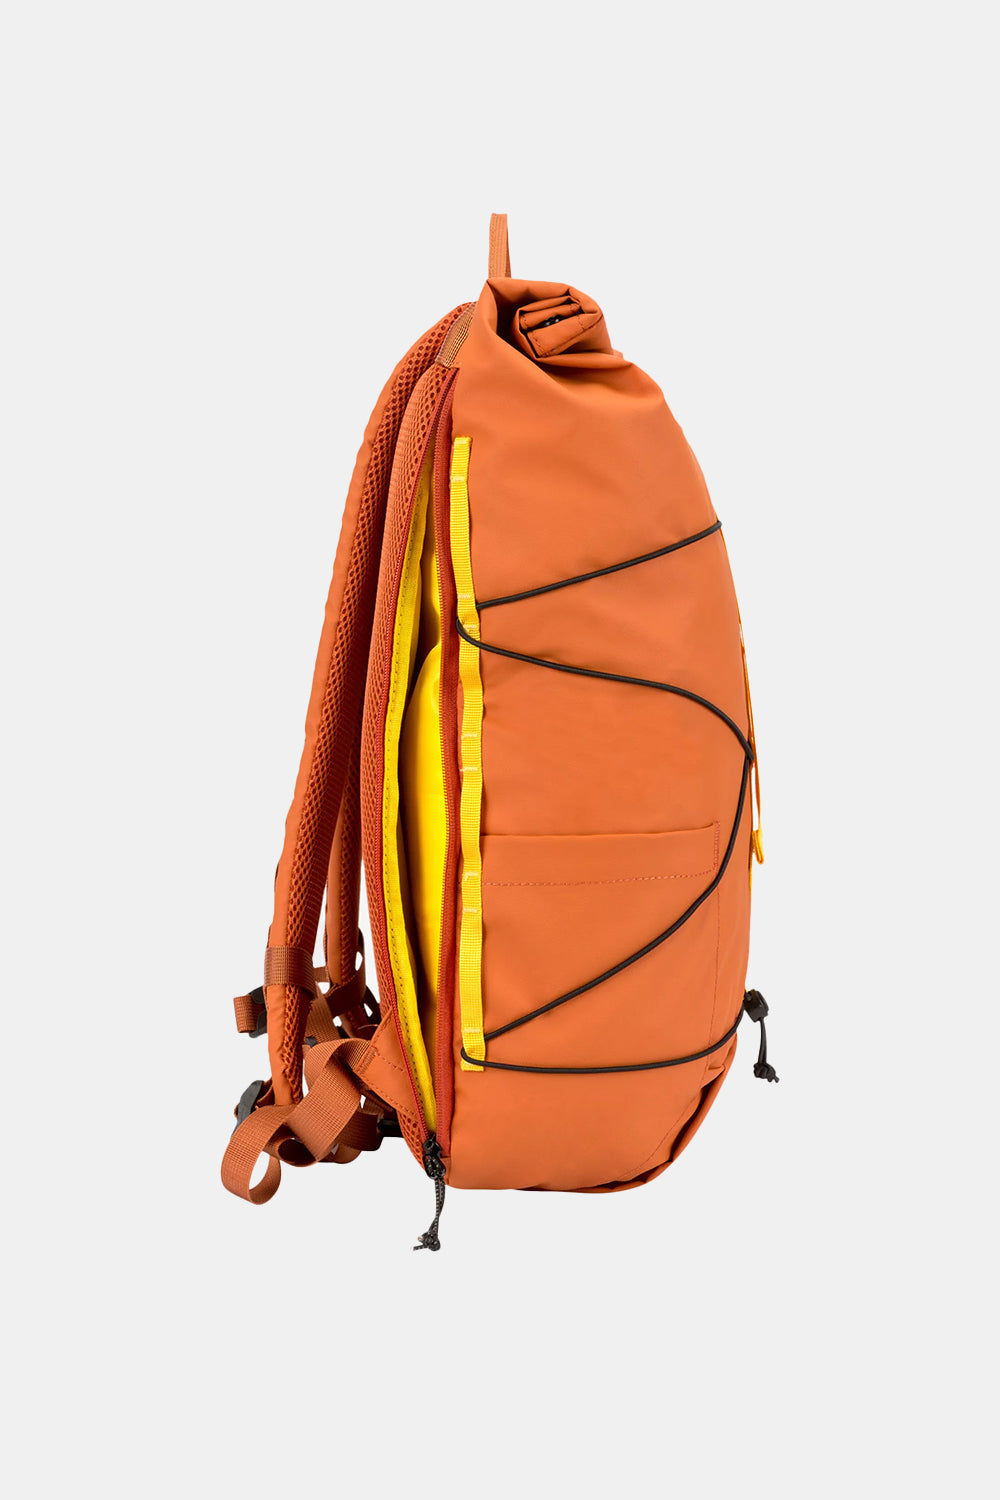 Elliker Dayle Roll Top Backpack 21/25L (Orange)
